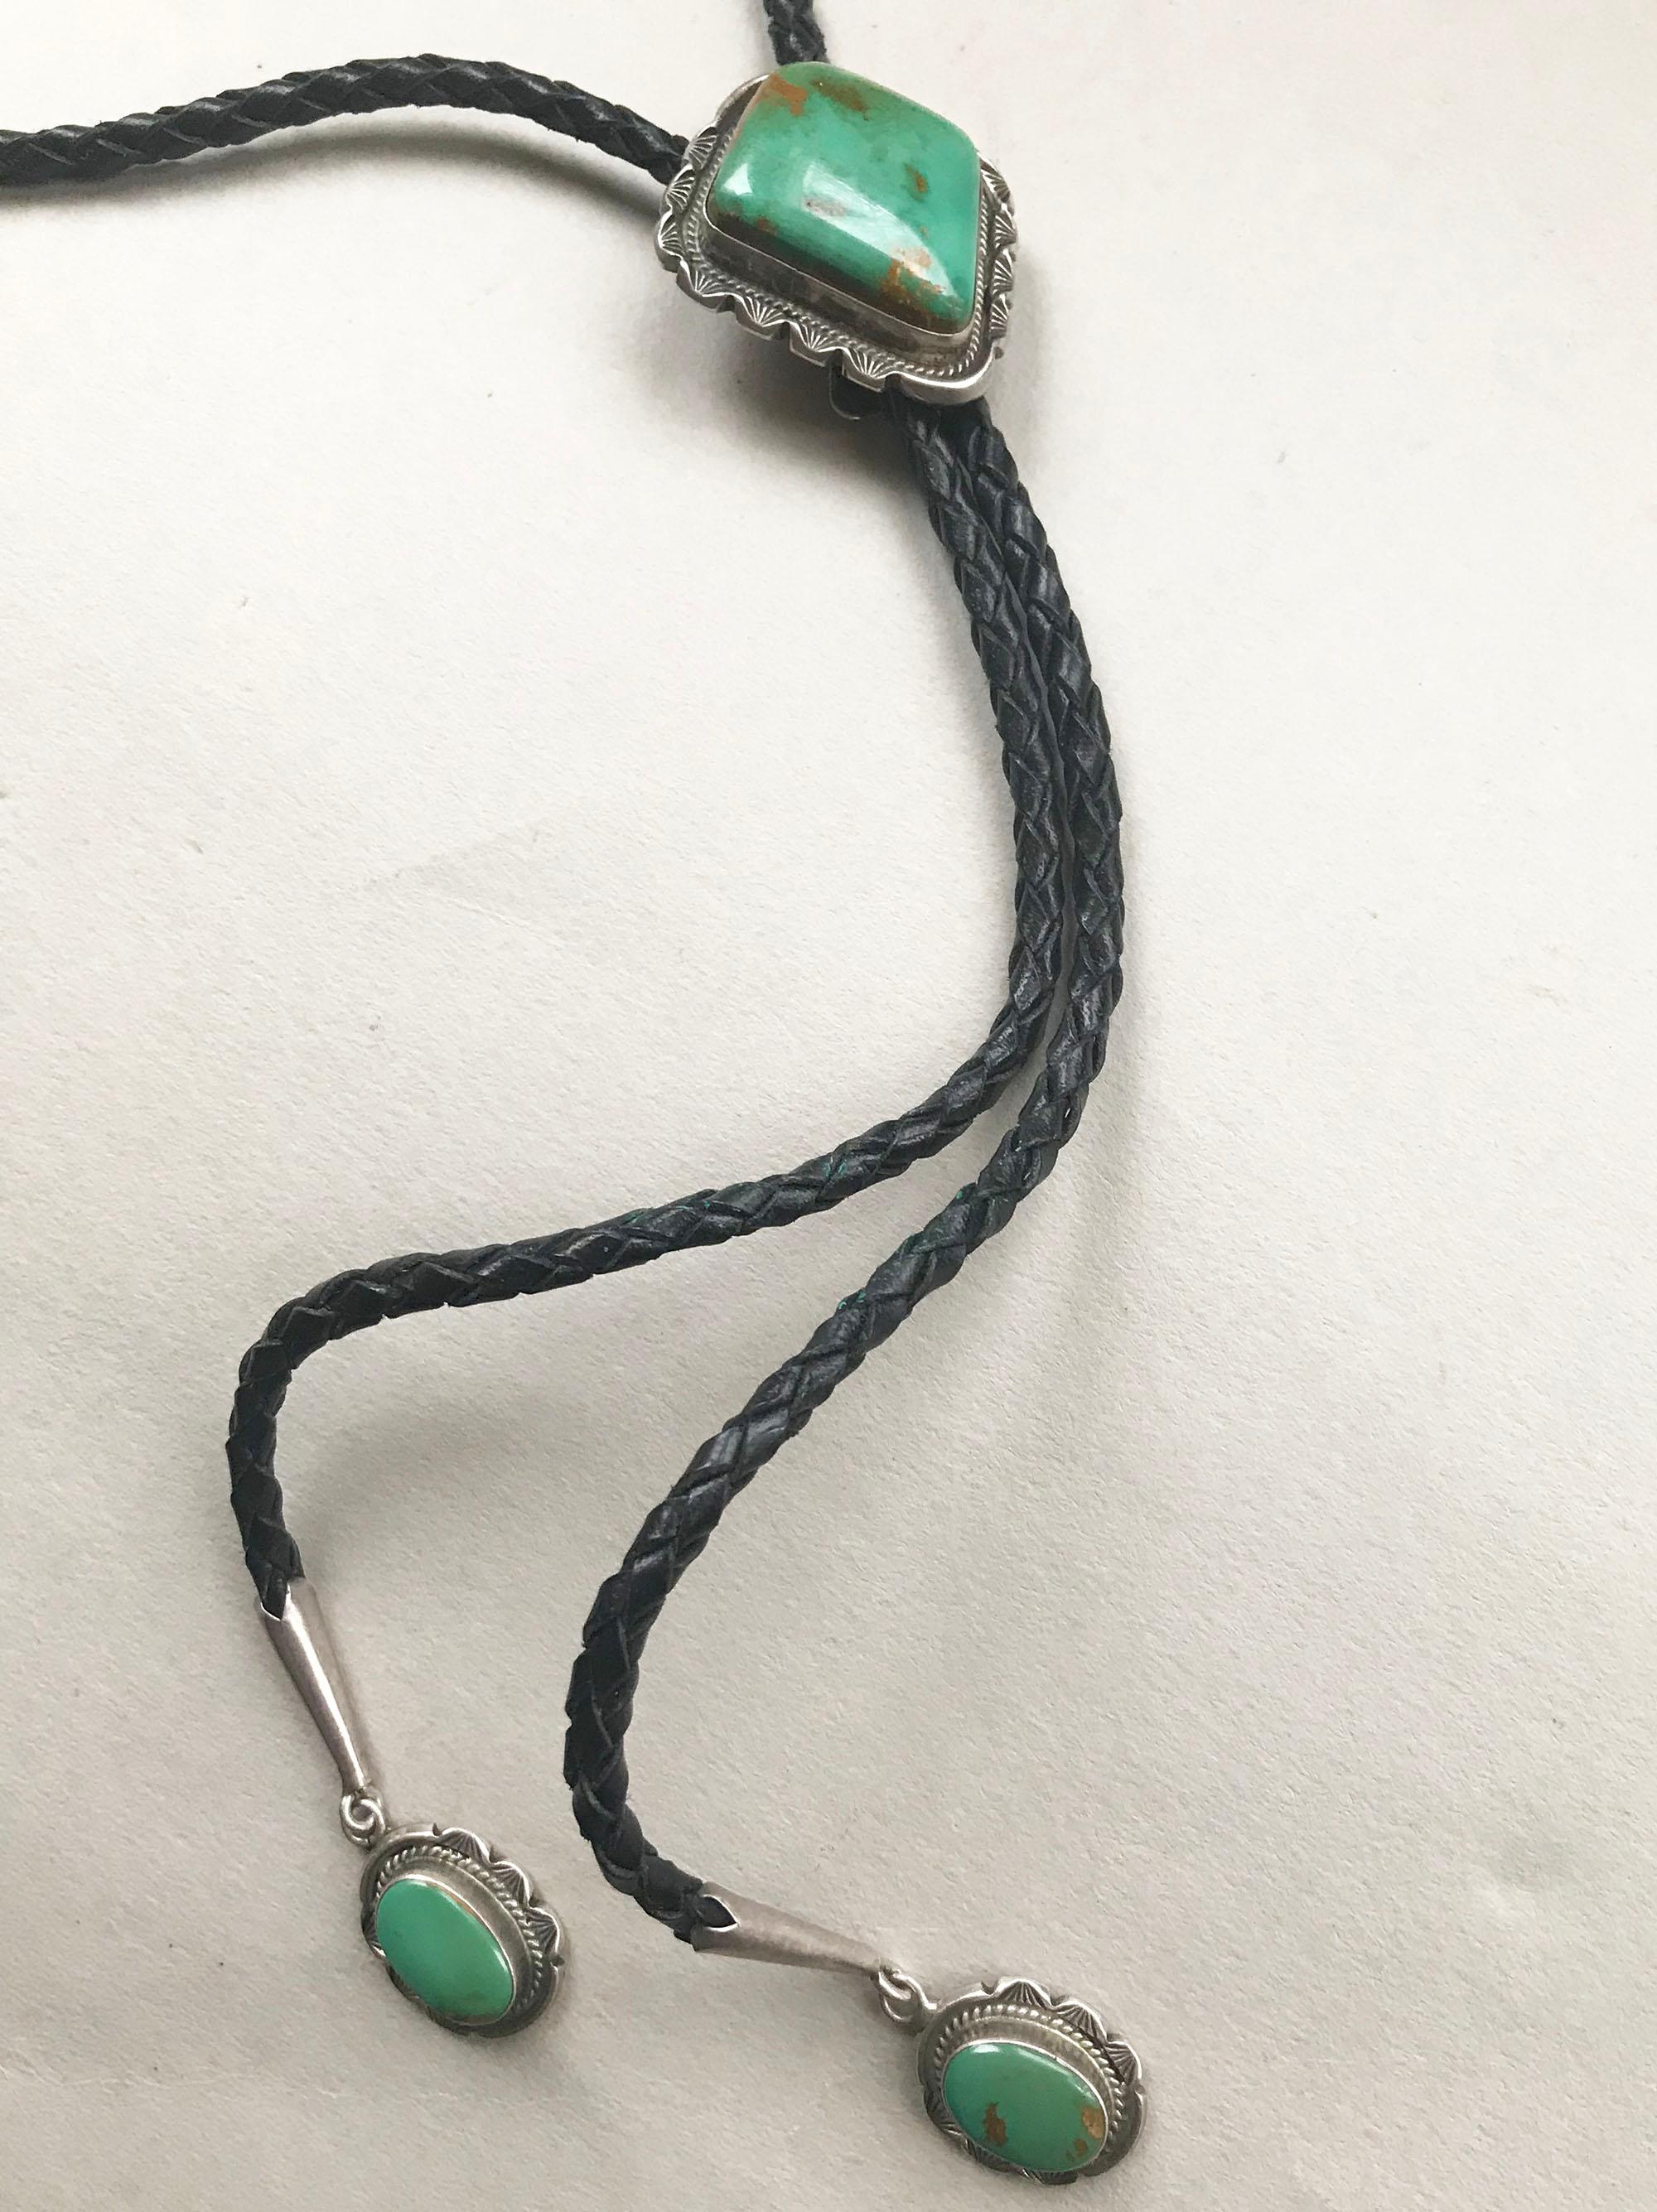 Eine hübsche handgefertigte Navajo Design Bolo Krawatte in Sterling Silber mit blau-grünem Türkis 
ca. 1960er Jahre.
Mit geflochtener schwarzer Lederkrawatte und Spitzen aus Sterling und Türkis.
Maße: 2 x 1 3/4